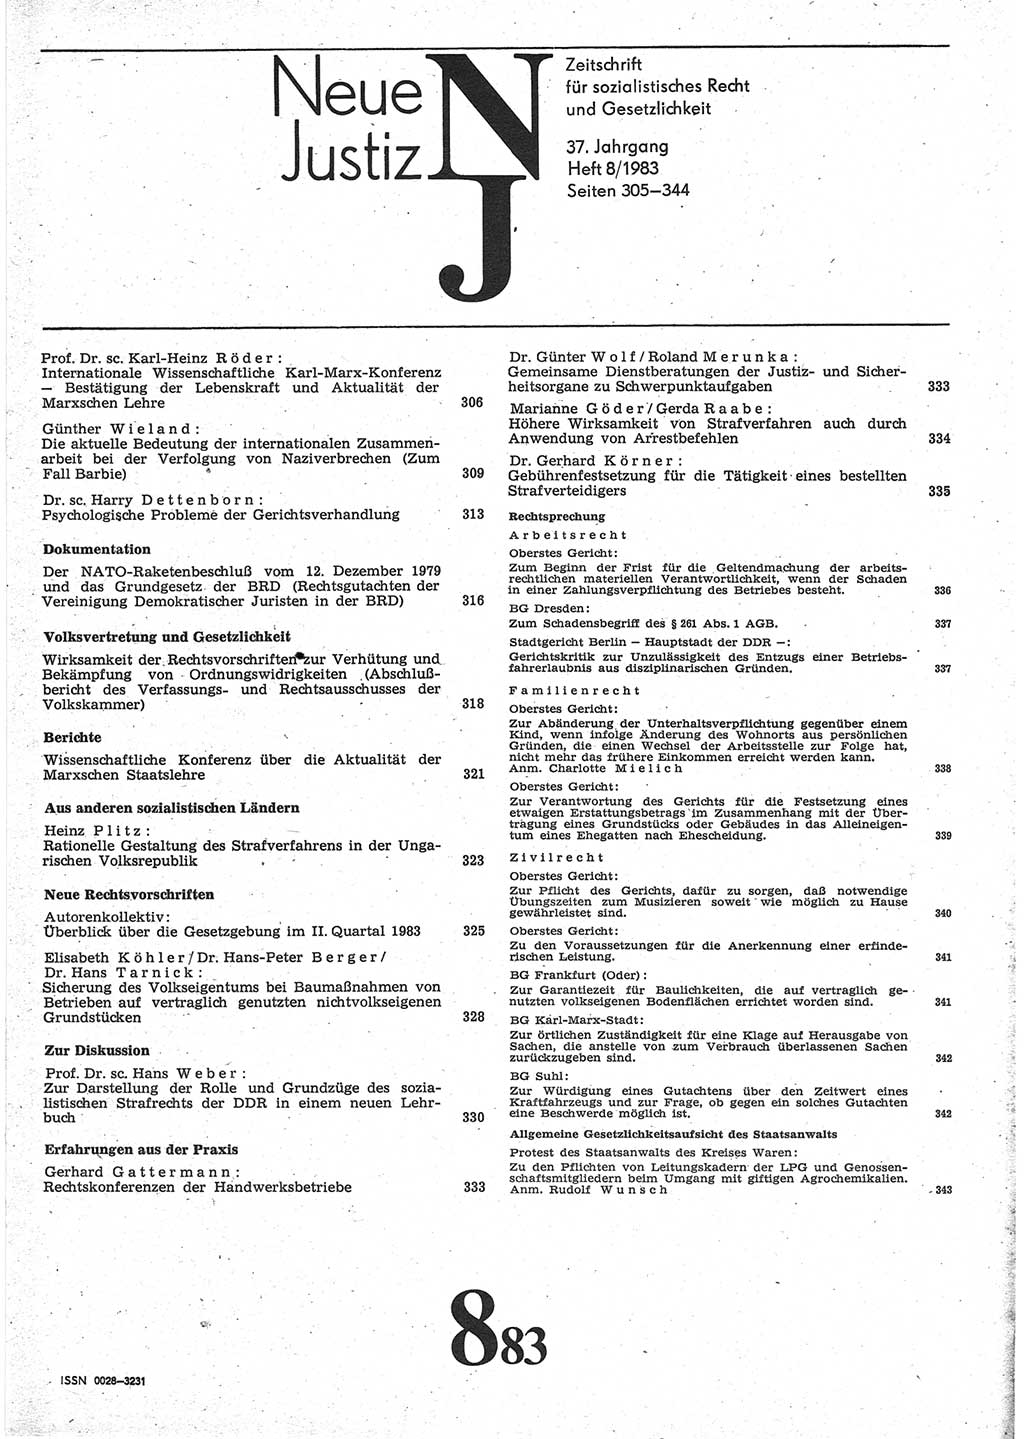 Neue Justiz (NJ), Zeitschrift für sozialistisches Recht und Gesetzlichkeit [Deutsche Demokratische Republik (DDR)], 37. Jahrgang 1983, Seite 305 (NJ DDR 1983, S. 305)